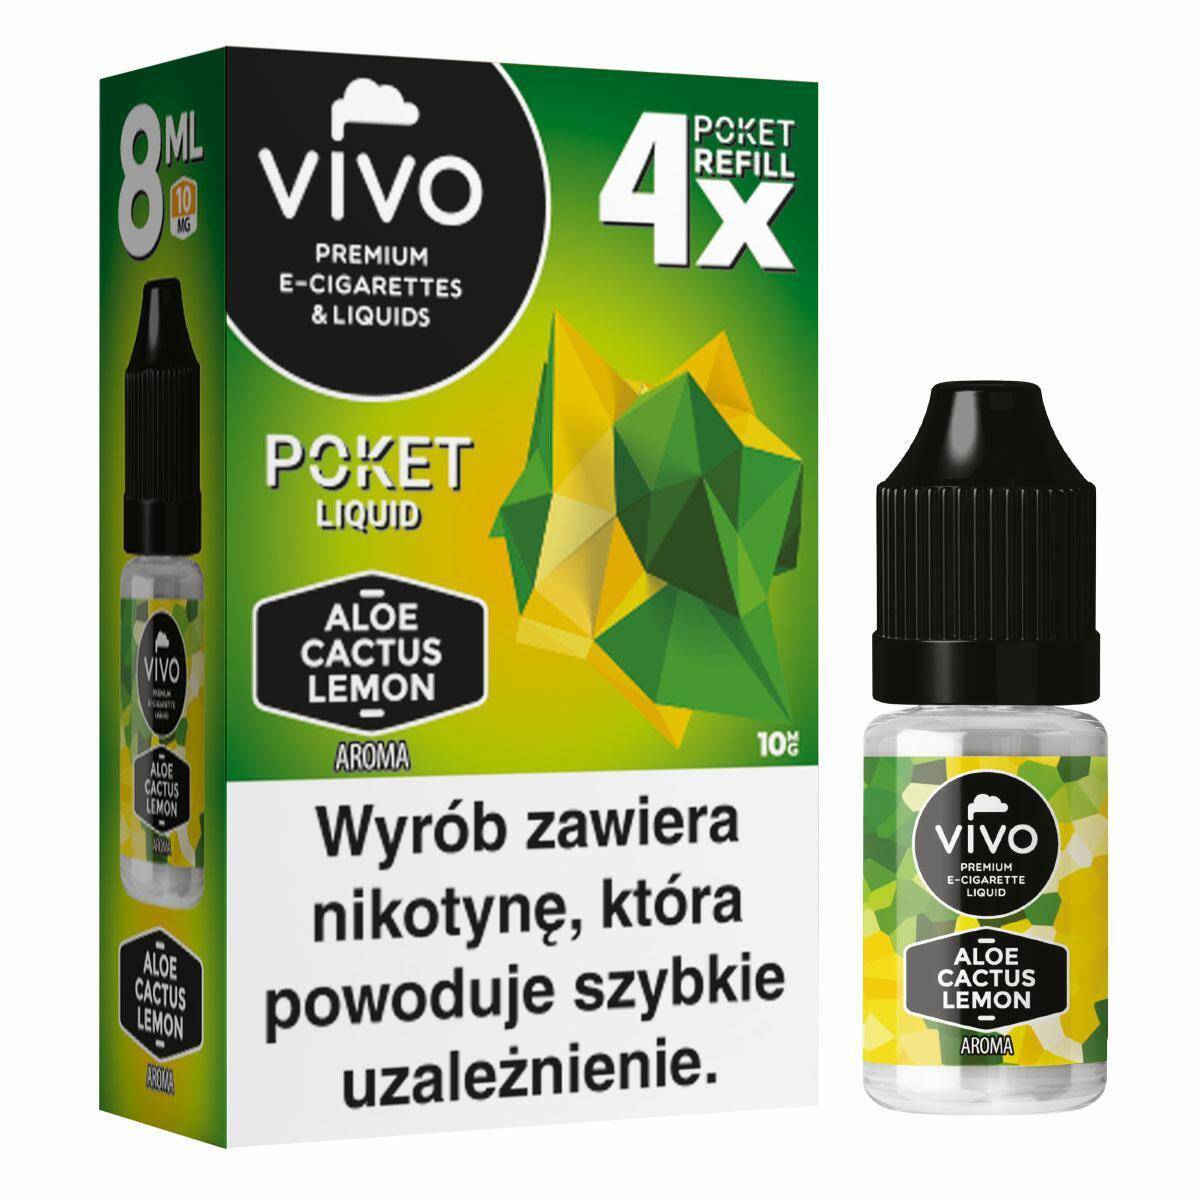 E-liquid VIVO POKET- Aloe Cactus Lemon x4/10mg/8ml